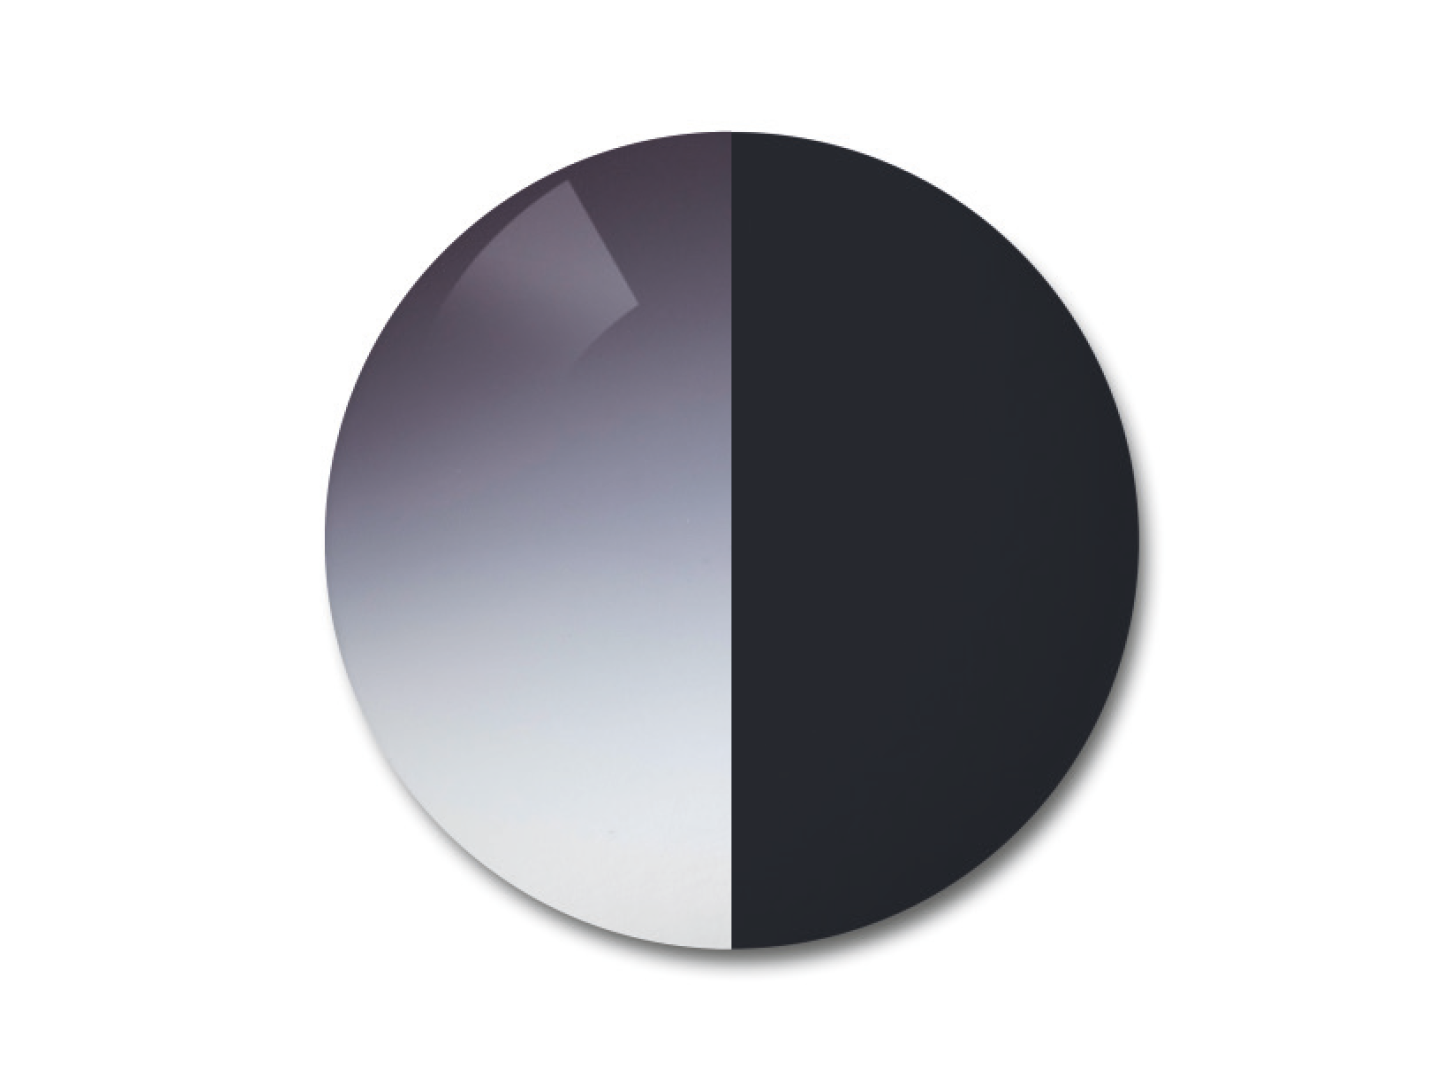 자이스 어댑티브선 변색 렌즈 중 그라데이션 그레이 색상을 보여주는 이미지 